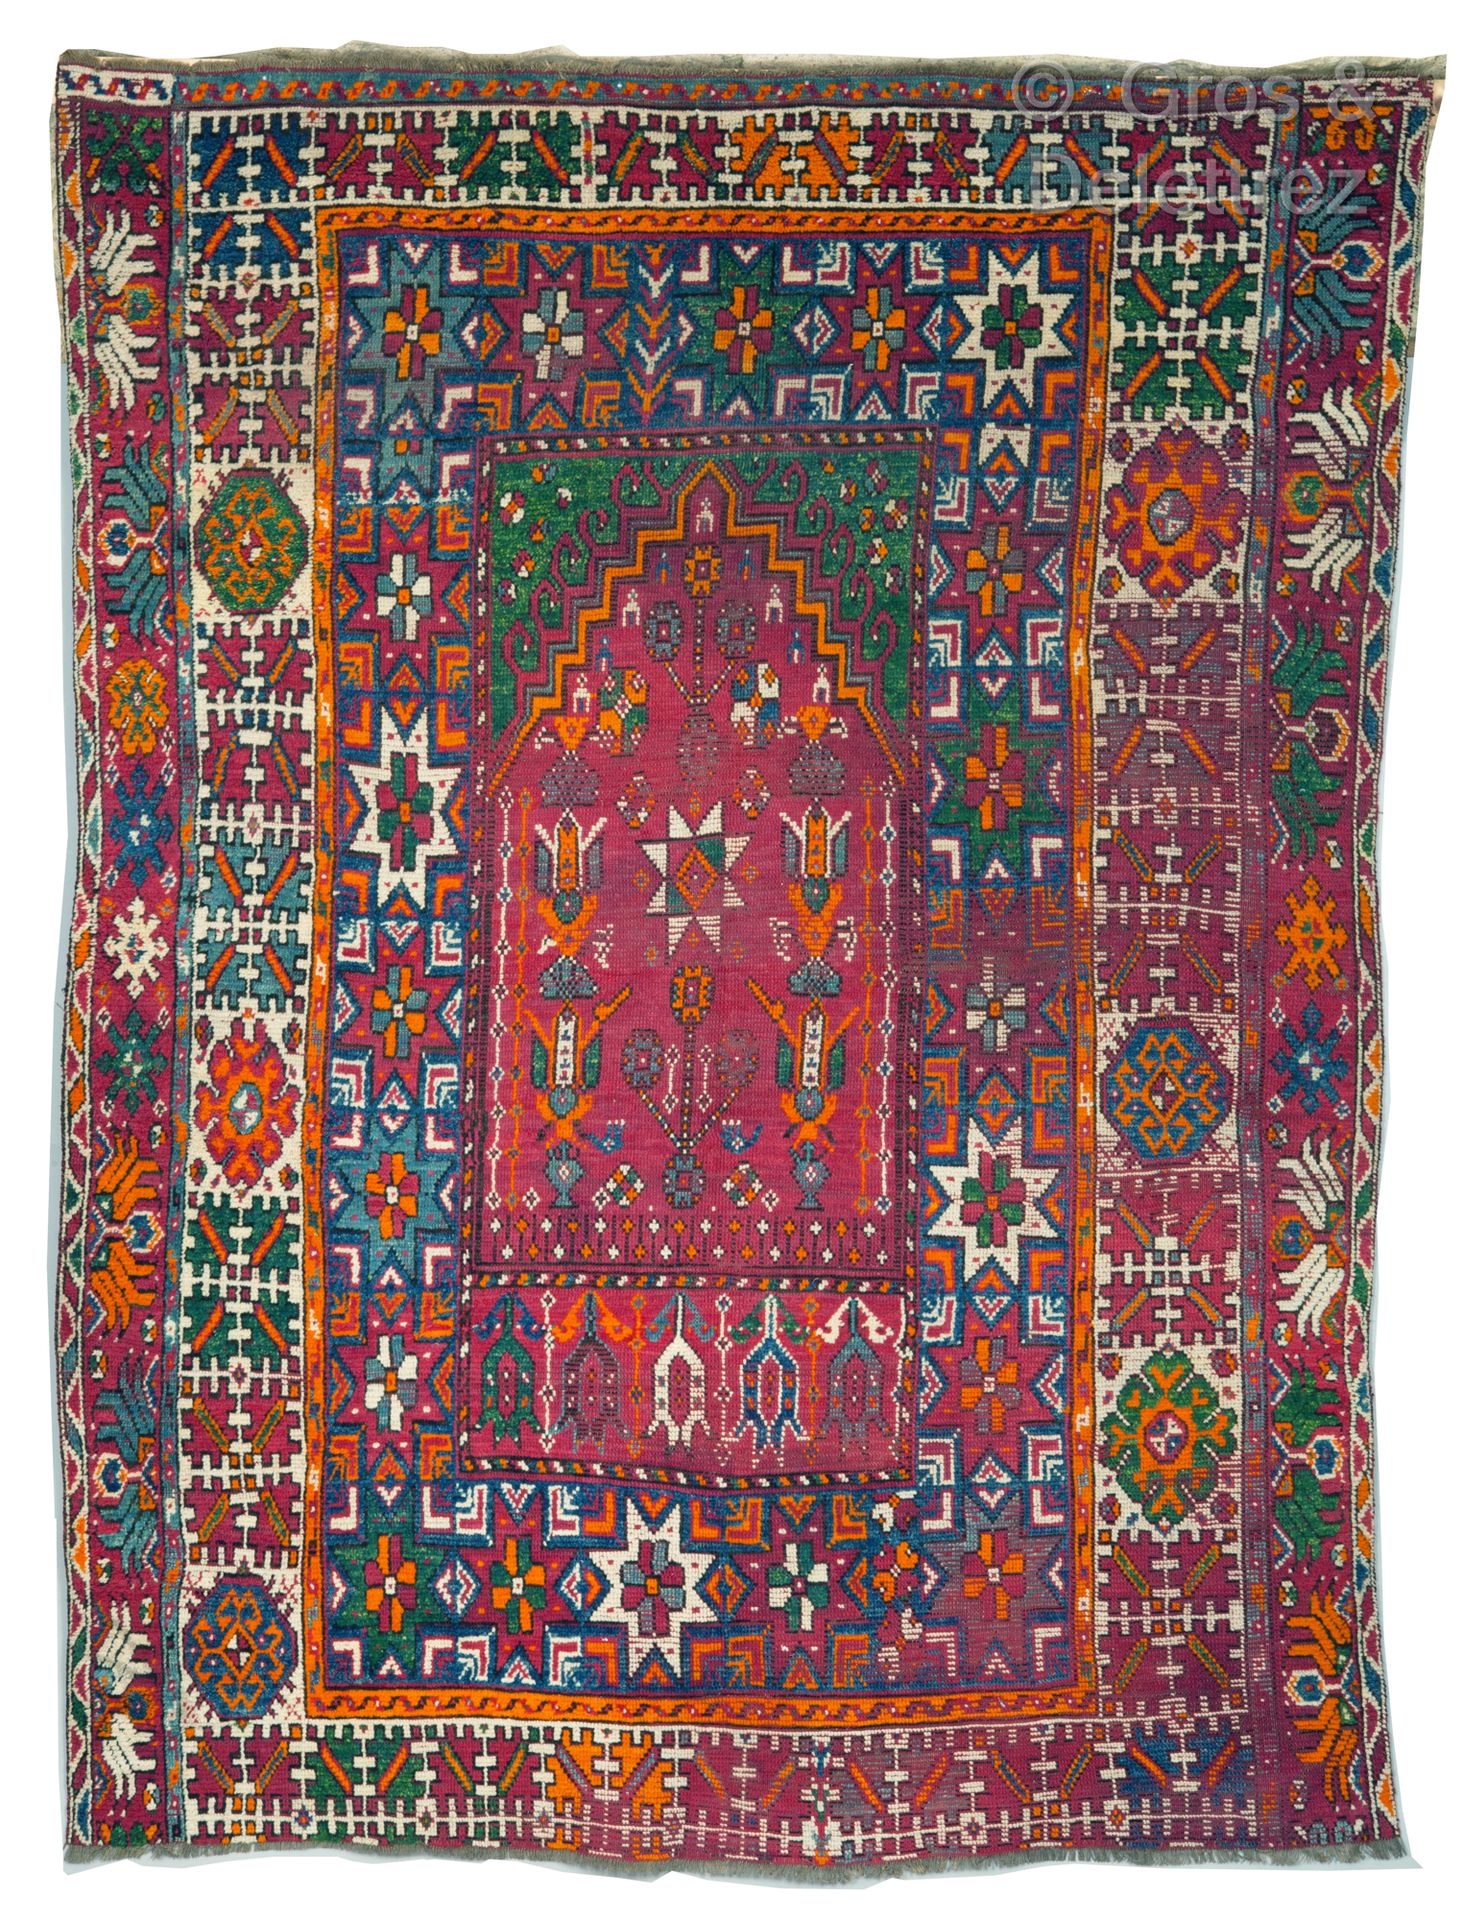 Null 祈祷的拉巴特地毯，摩洛哥

祈祷的拉巴特地毯，摩洛哥

祈祷龛装饰，被称为Mirhab，背景以红色为主，装饰有朝上的花卉图案，并以三个宽边为框架，装饰&hellip;